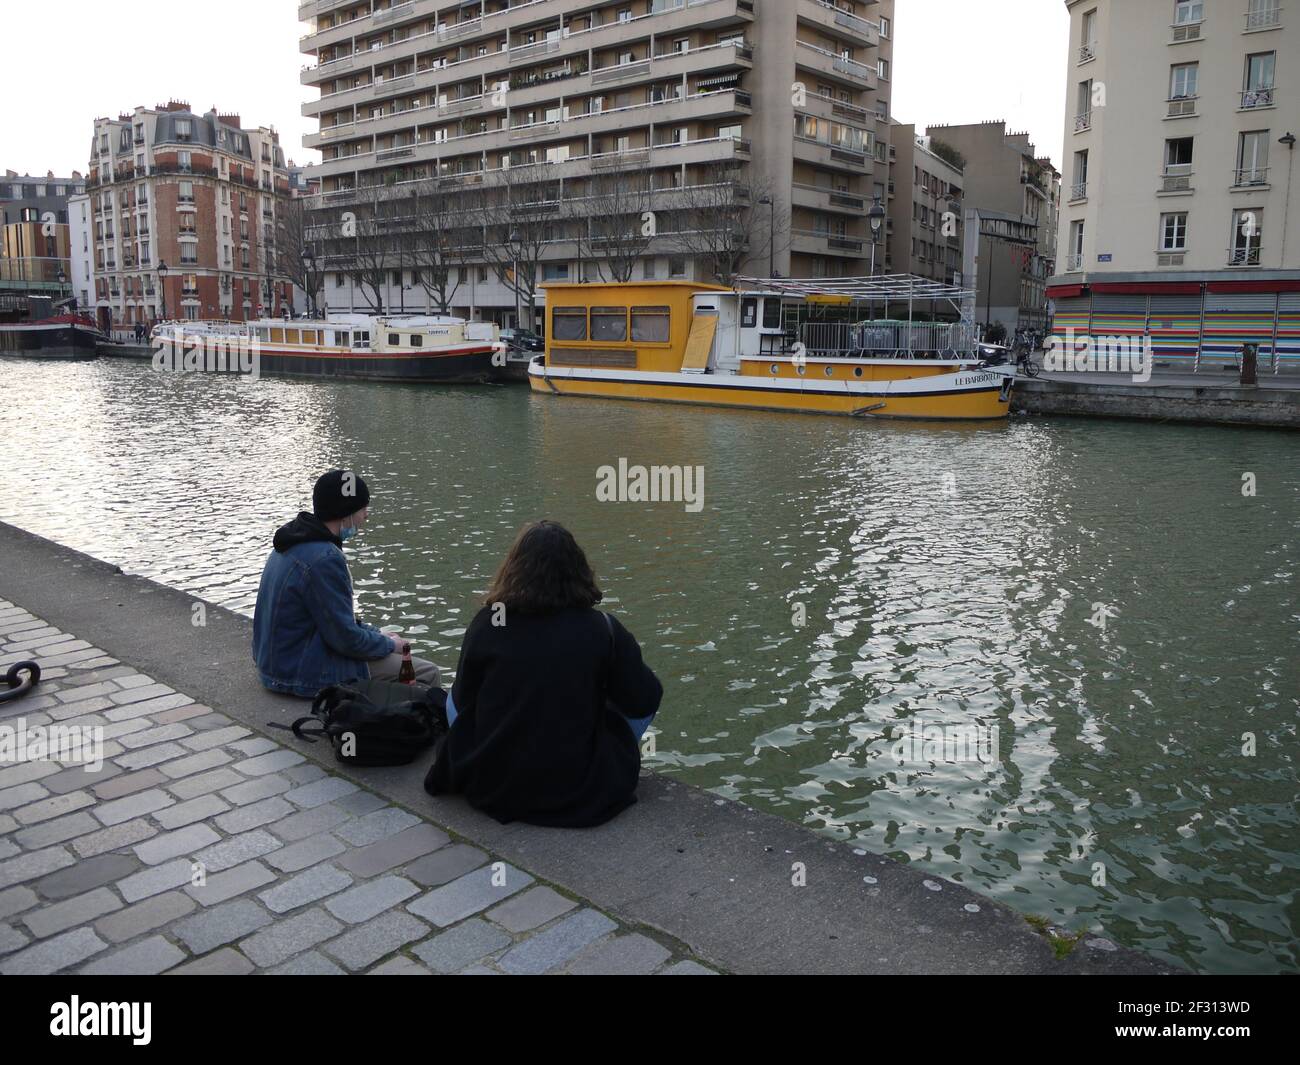 Les quais du canal Ourcq à Paris sont un Lieu pour les Parisiens à pied le dimanche et pour se garer pour les barges Banque D'Images